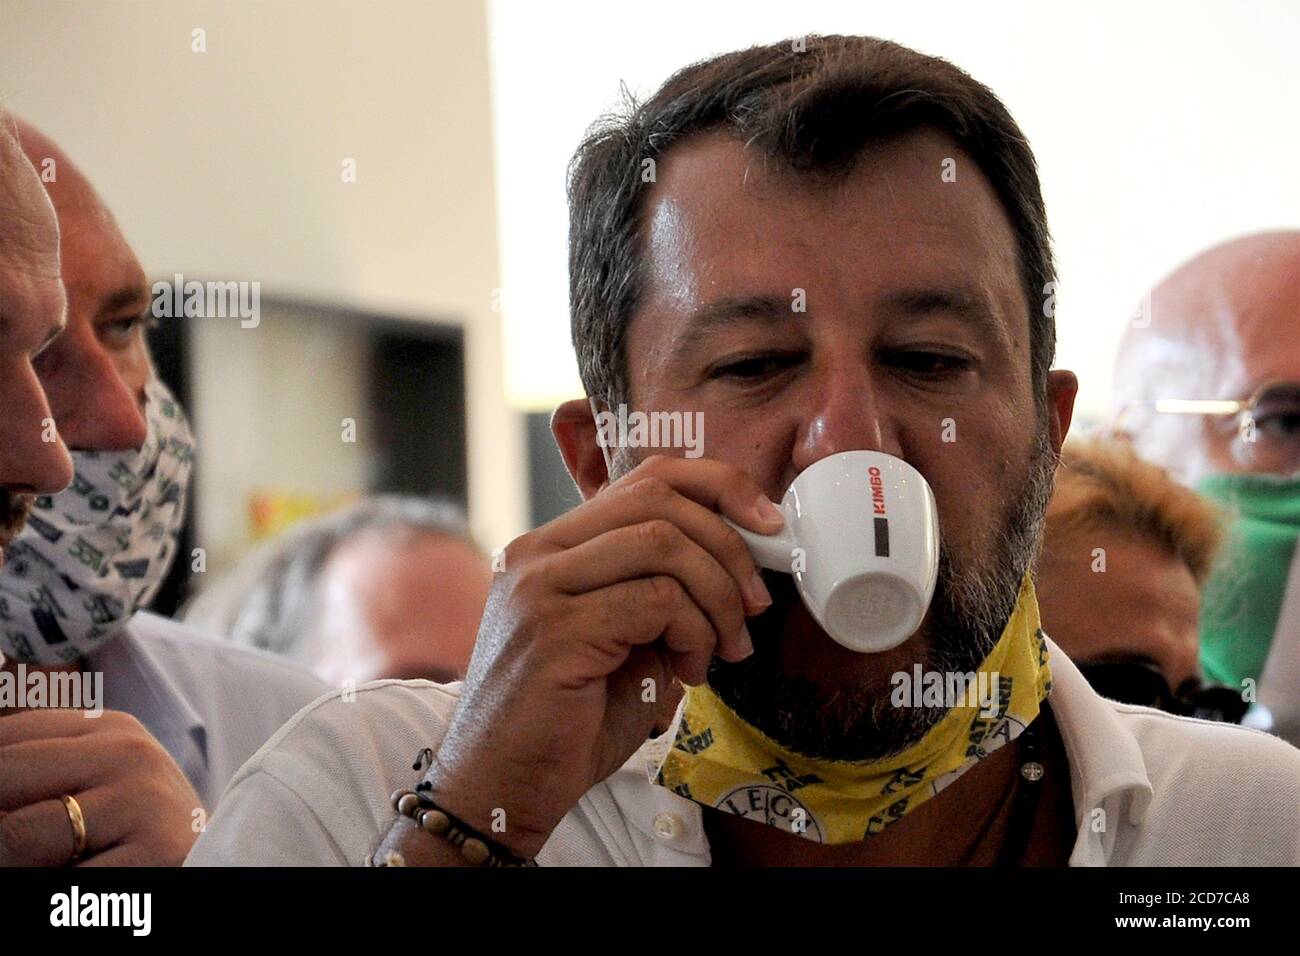 Caserta (CE), Campania, Italia 27 agosto 2020. Il Ministro Matteo Salvini beve un caffè durante una breve visita nella città di Caserta (CE), per incontrare i suoi sostenitori prima delle elezioni regionali che si terranno a metà settembre. Credit: Vincenzo izzo / Alamy Live News Foto Stock